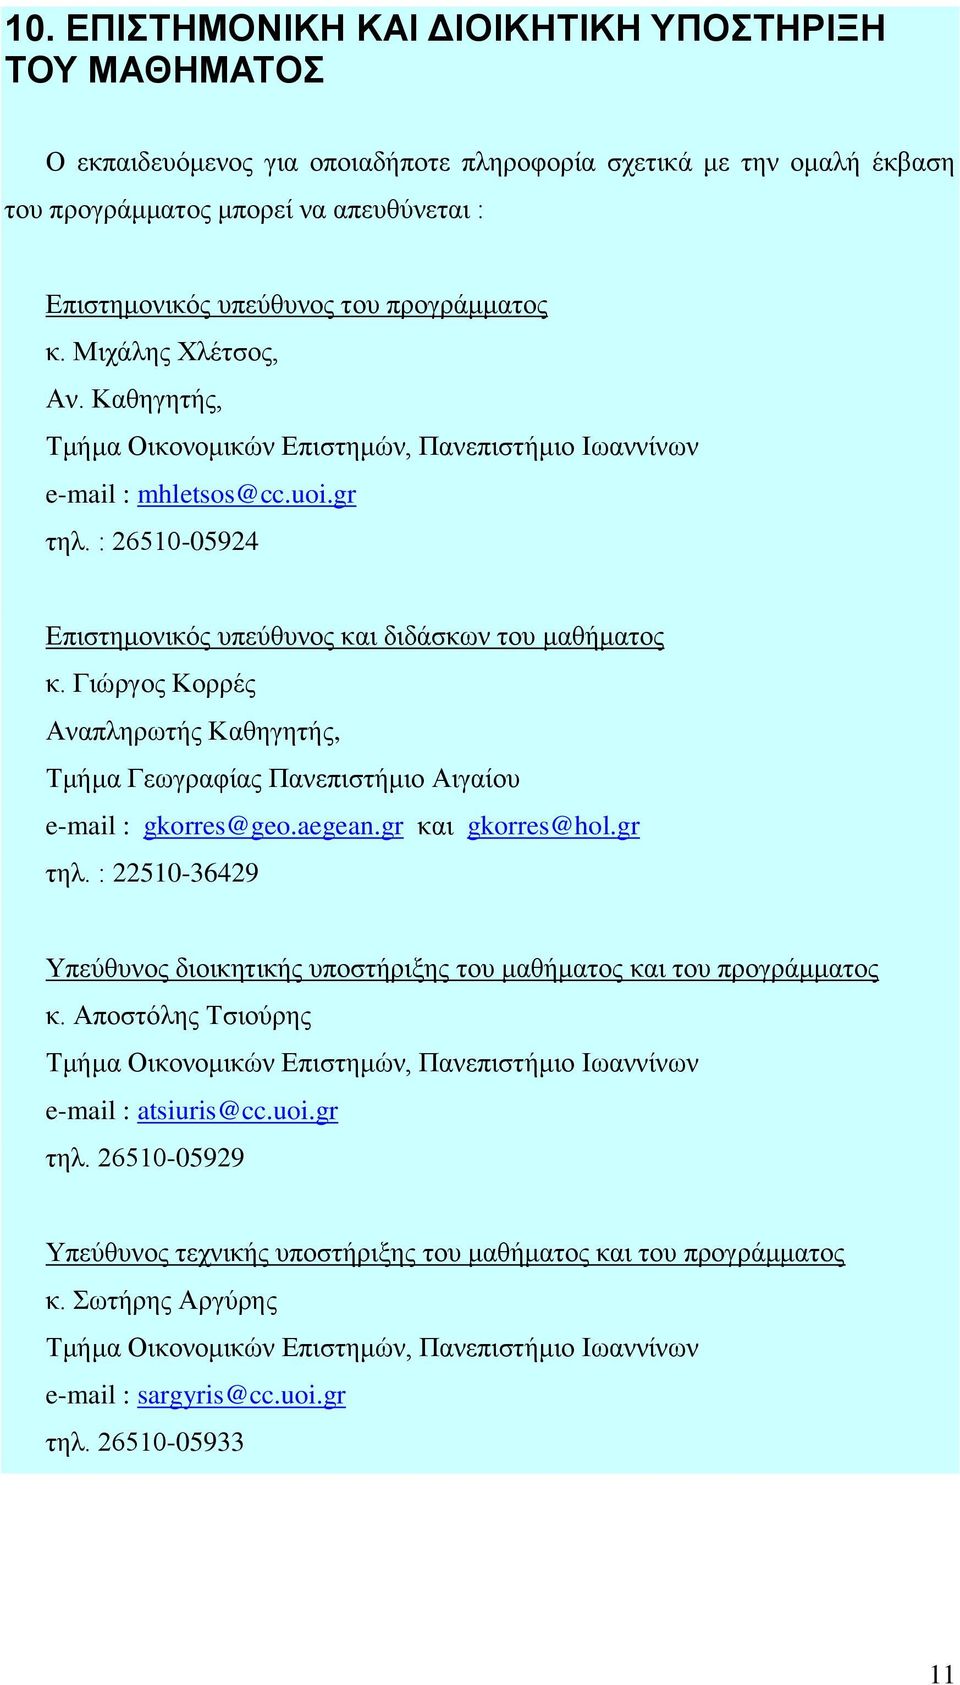 Γηώξγνο Κνξξέο Αλαπιεξσηήο Καζεγεηήο, Τκήκα Γεσγξαθίαο Παλεπηζηήκην Αηγαίνπ e-mail : gkorres@geo.aegean.gr θαη gkorres@hol.gr ηει.